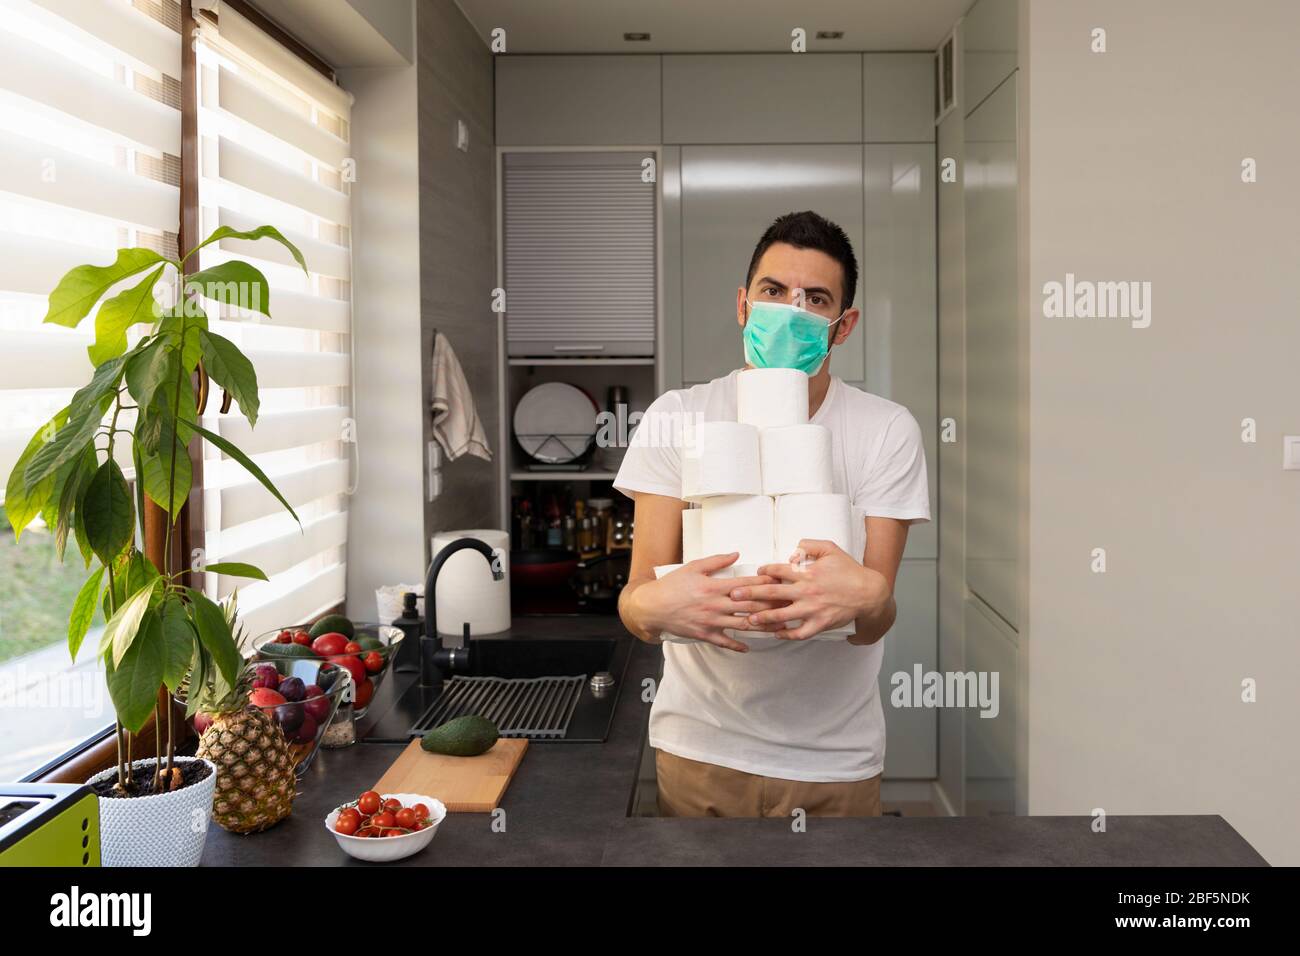 Ein Mann freut sich über das erworbene toilettenpapier wegen der Panik und des Mangels, der durch den Ausbruch des Kovid19-Virus verursacht wurde. Konzeptionelles Foto über Stockfoto